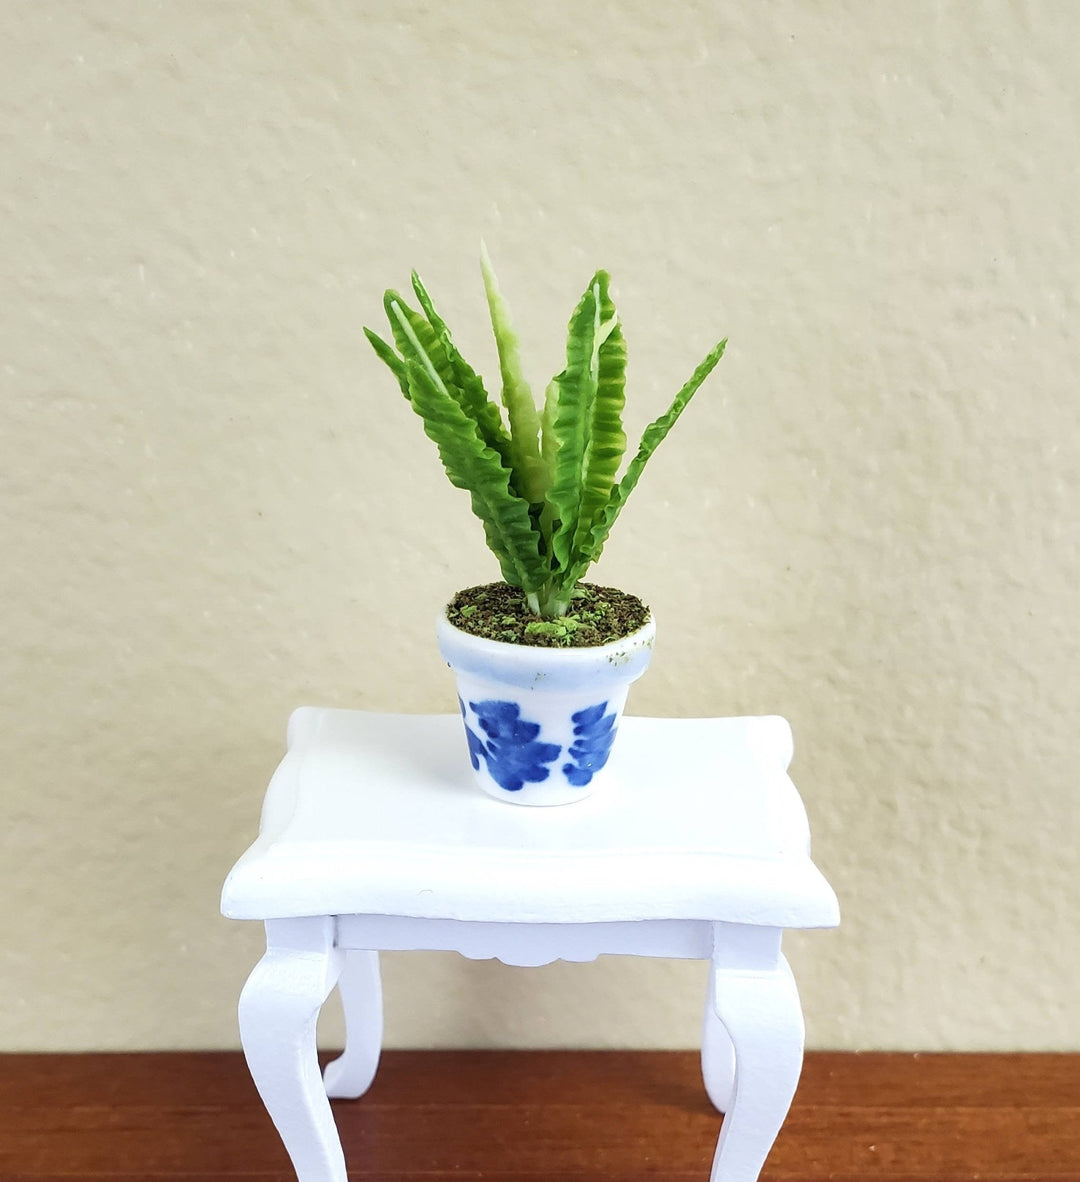 Dollhouse Miniature Plant Broadleaf Fern in Blue & White Ceramic Pot 1:12 Scale - Miniature Crush